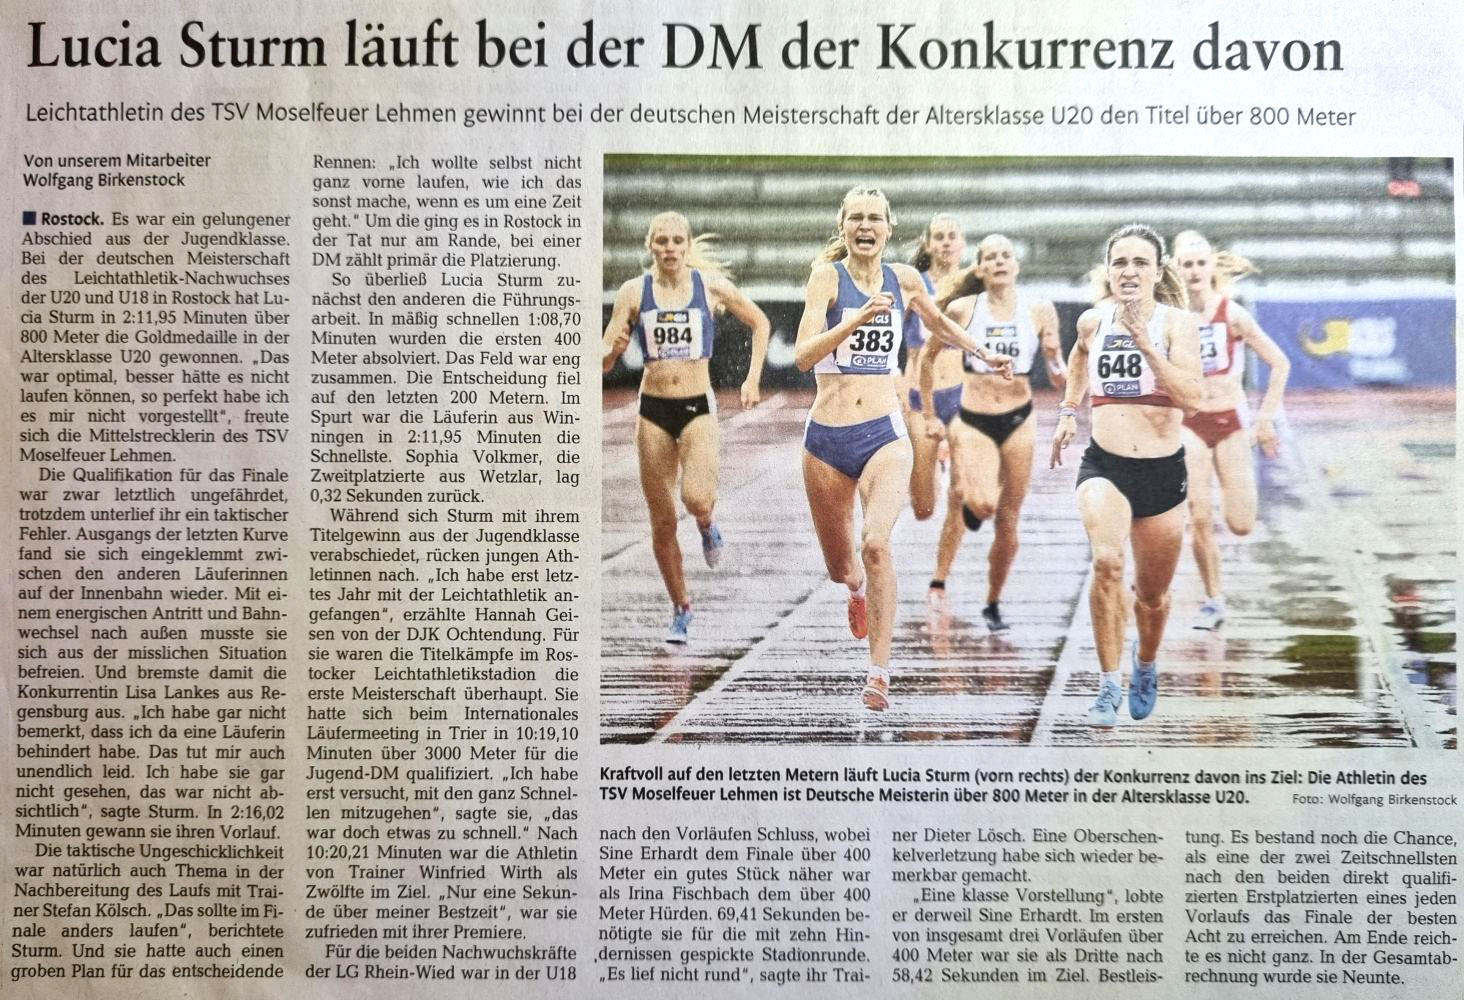 Lucia Sturm in Deuztsche Meisterin über 800 m der U20.